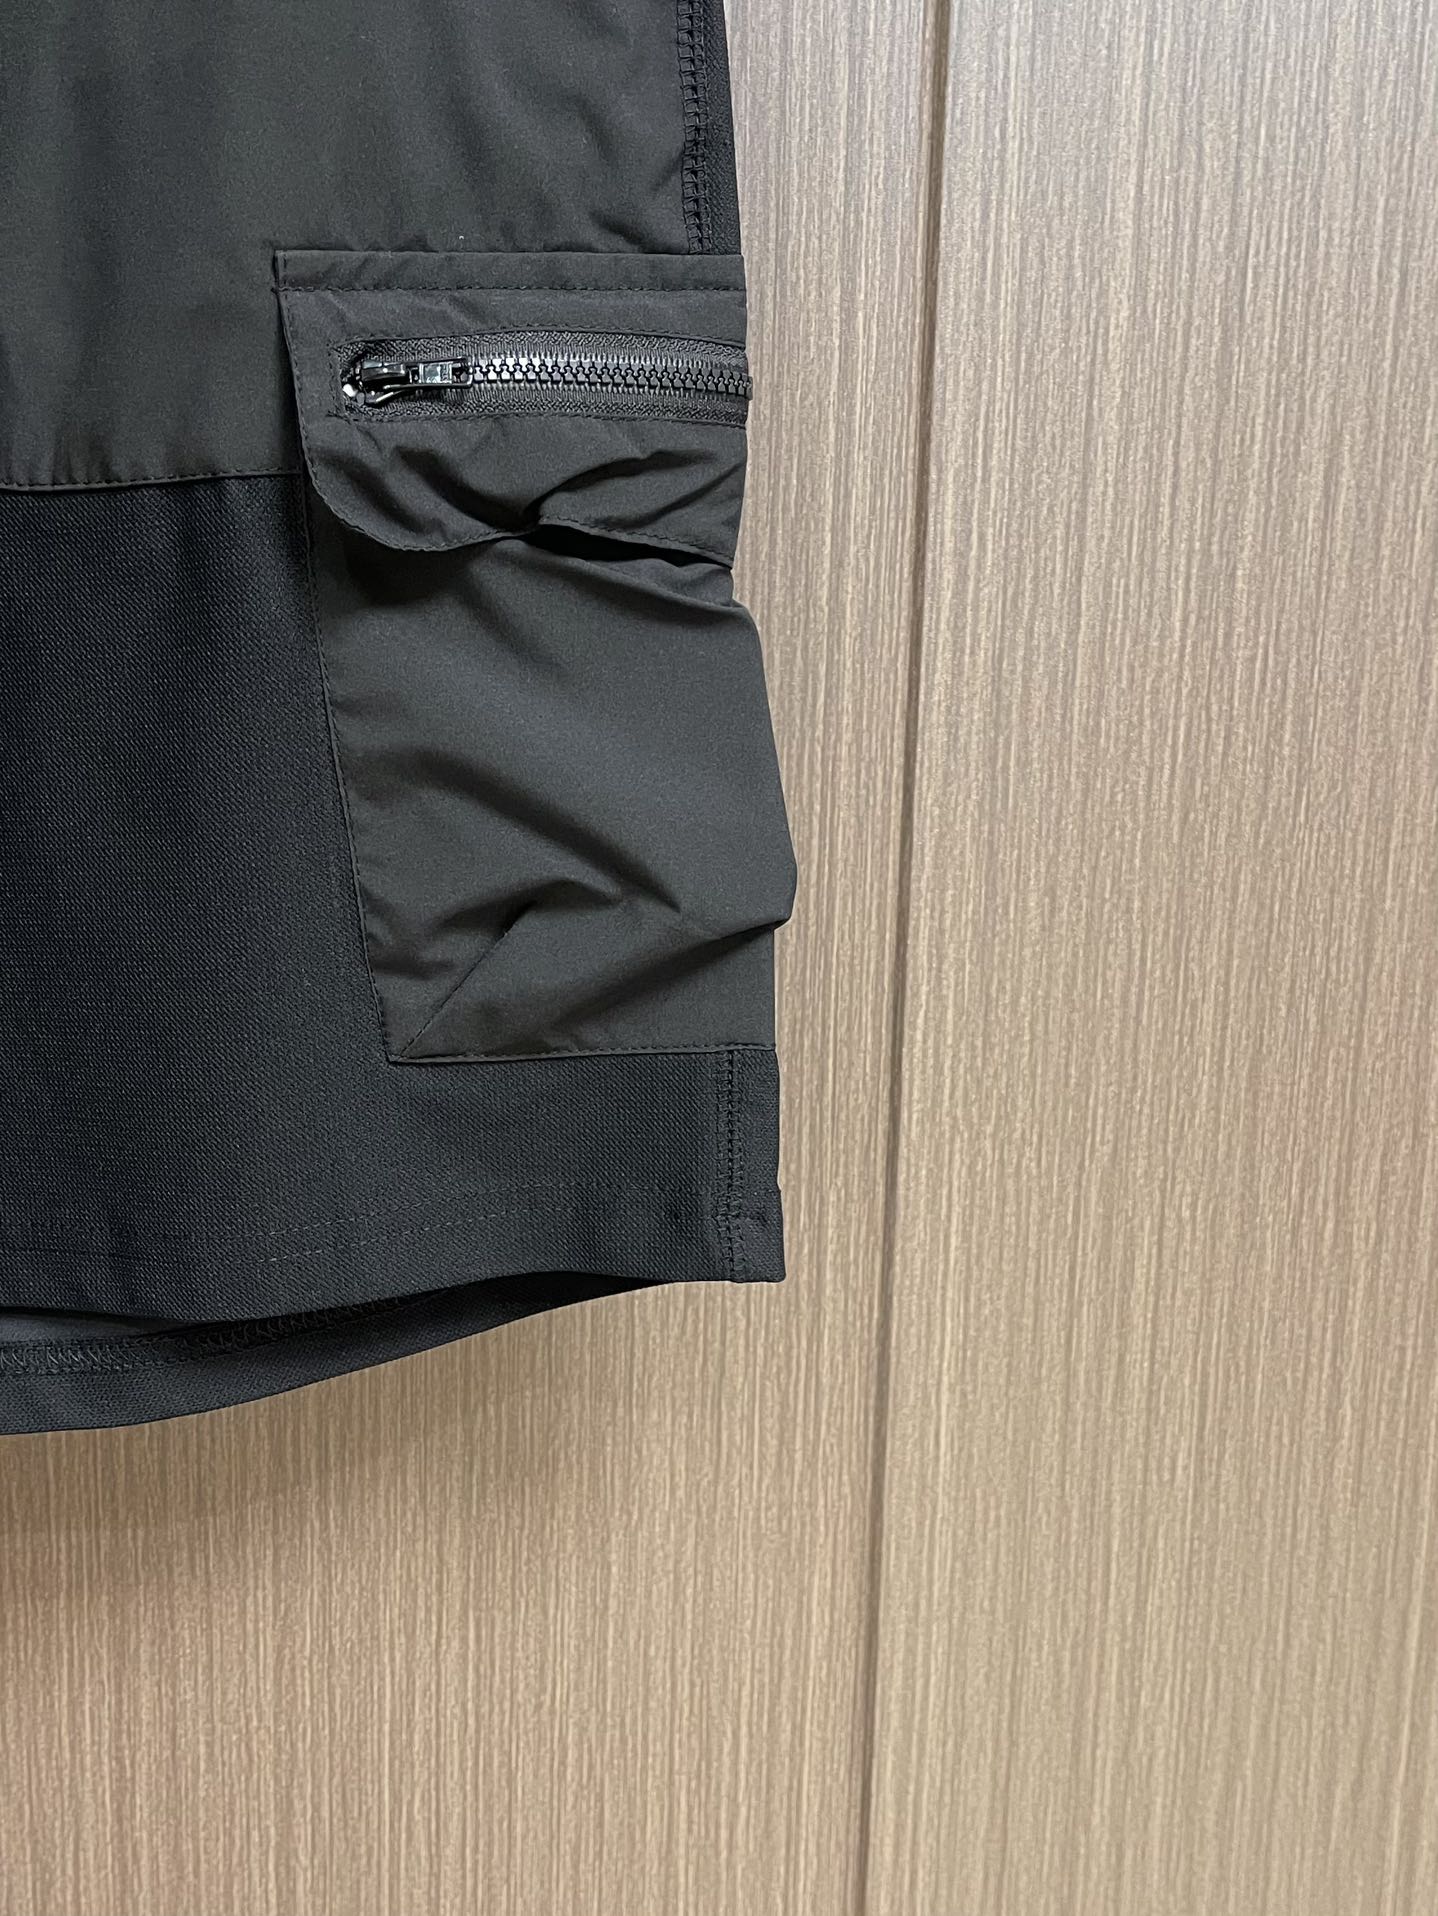 Y3高街休闲五分裤立体剪裁运动短裤其实对于Y-3来说暗黑是他们最主要的设计元素之一也是其招牌性的系列对于